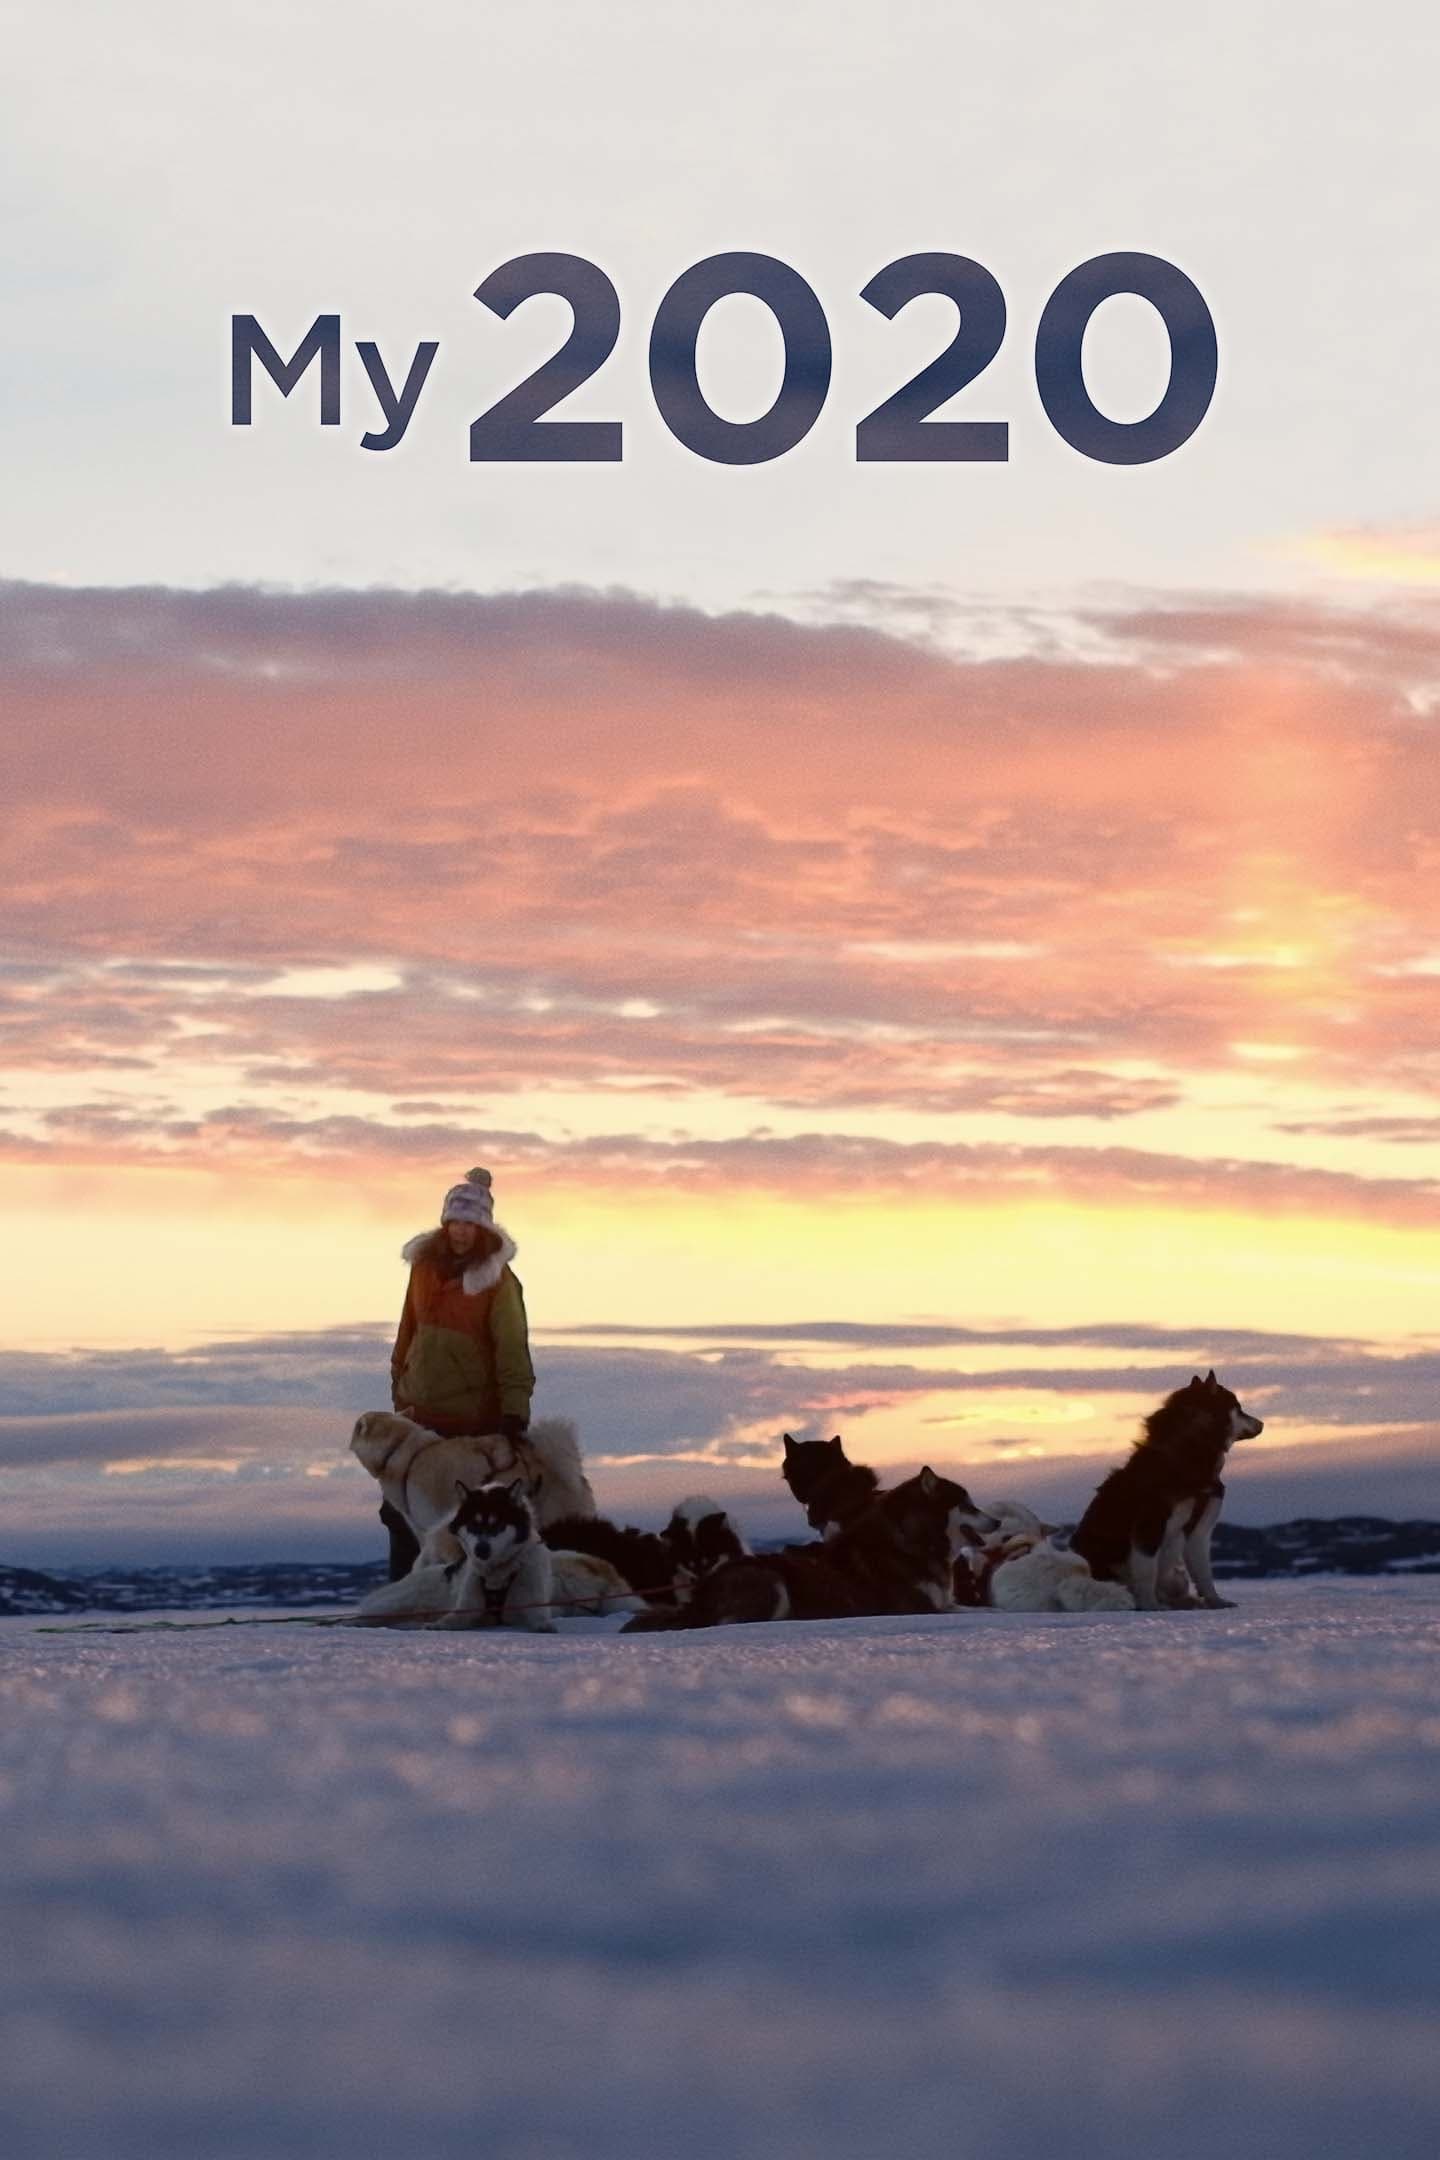 My 2020